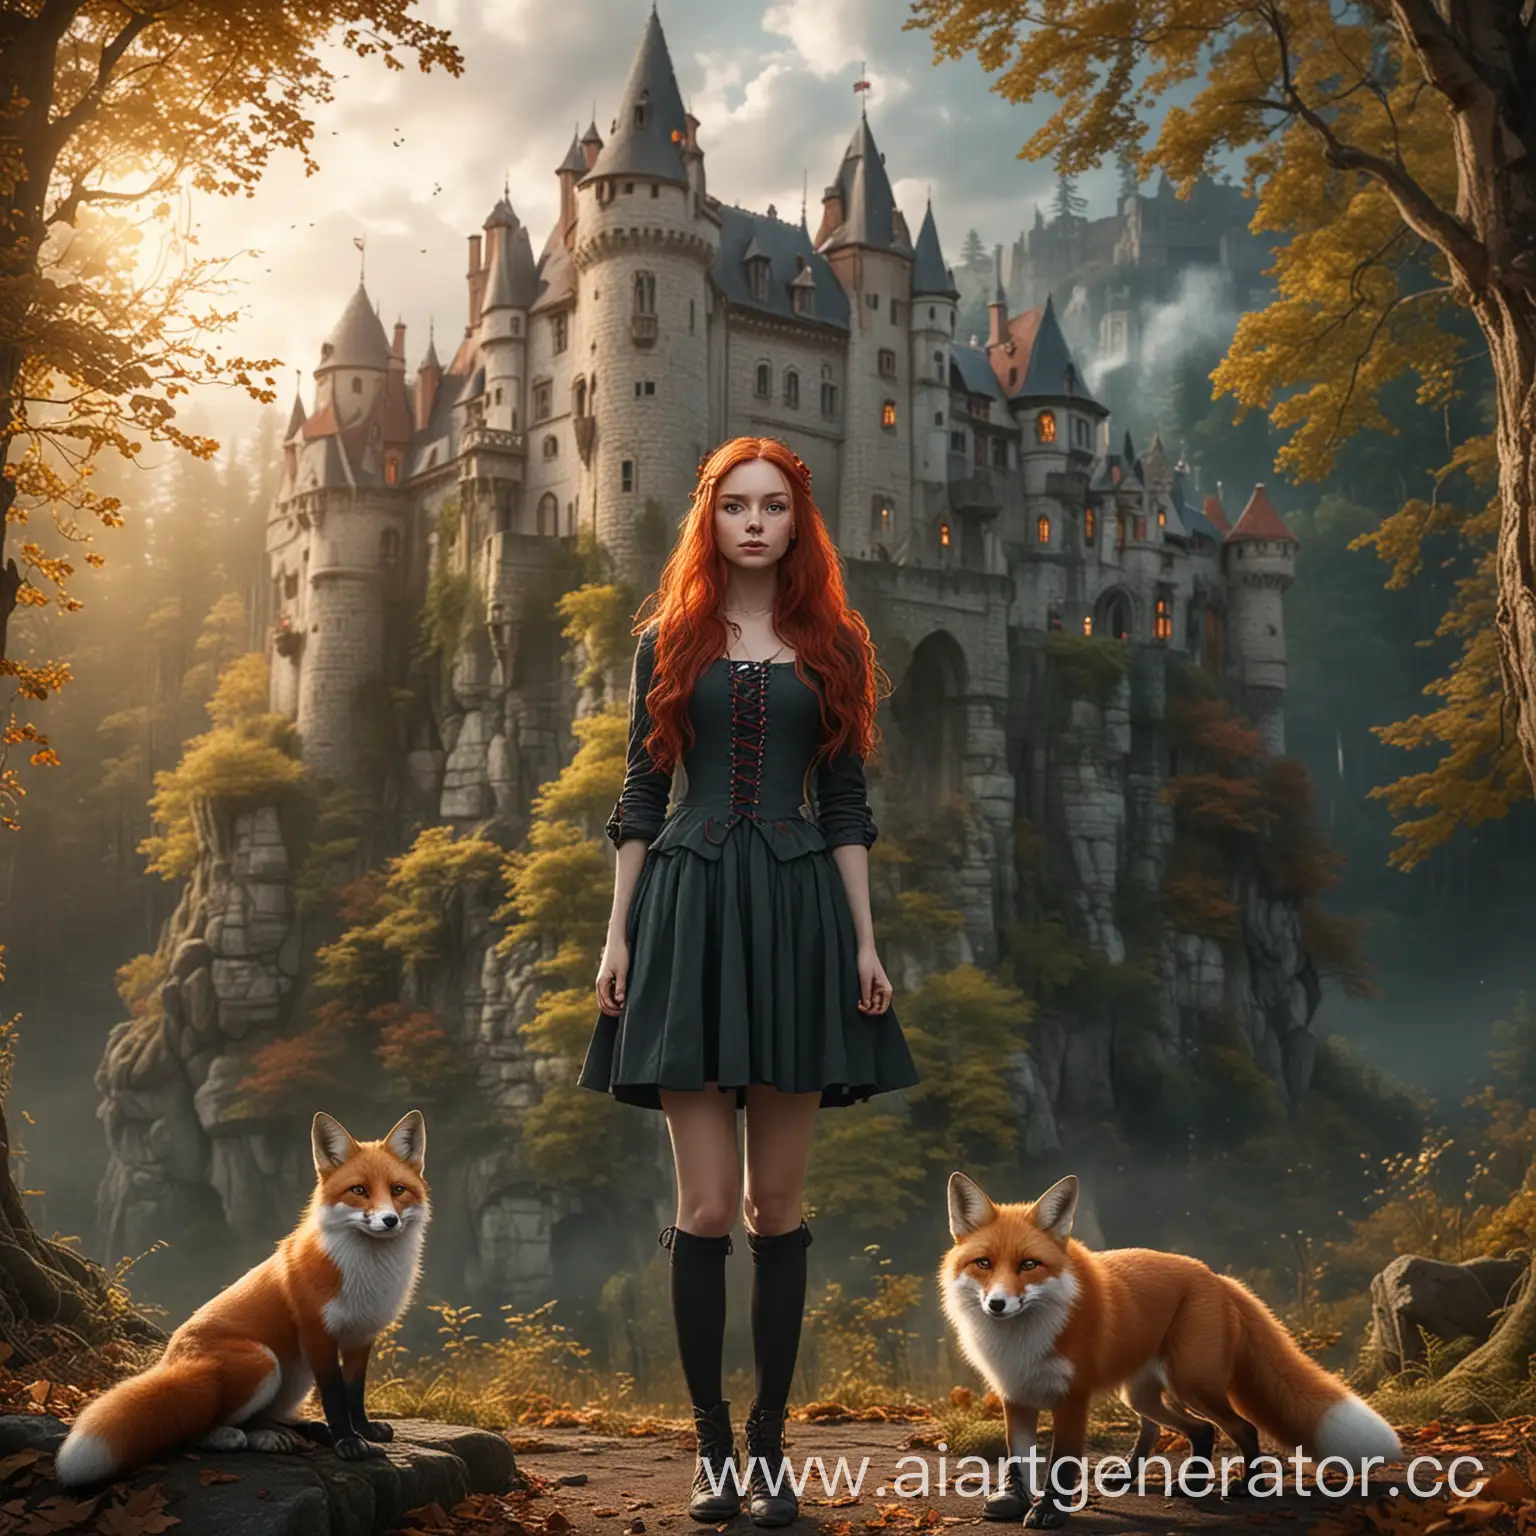 На фоне замок в лесу, девушка с рыжими волосами и ее магическое животное Лиса, формат изображения 1280х720
